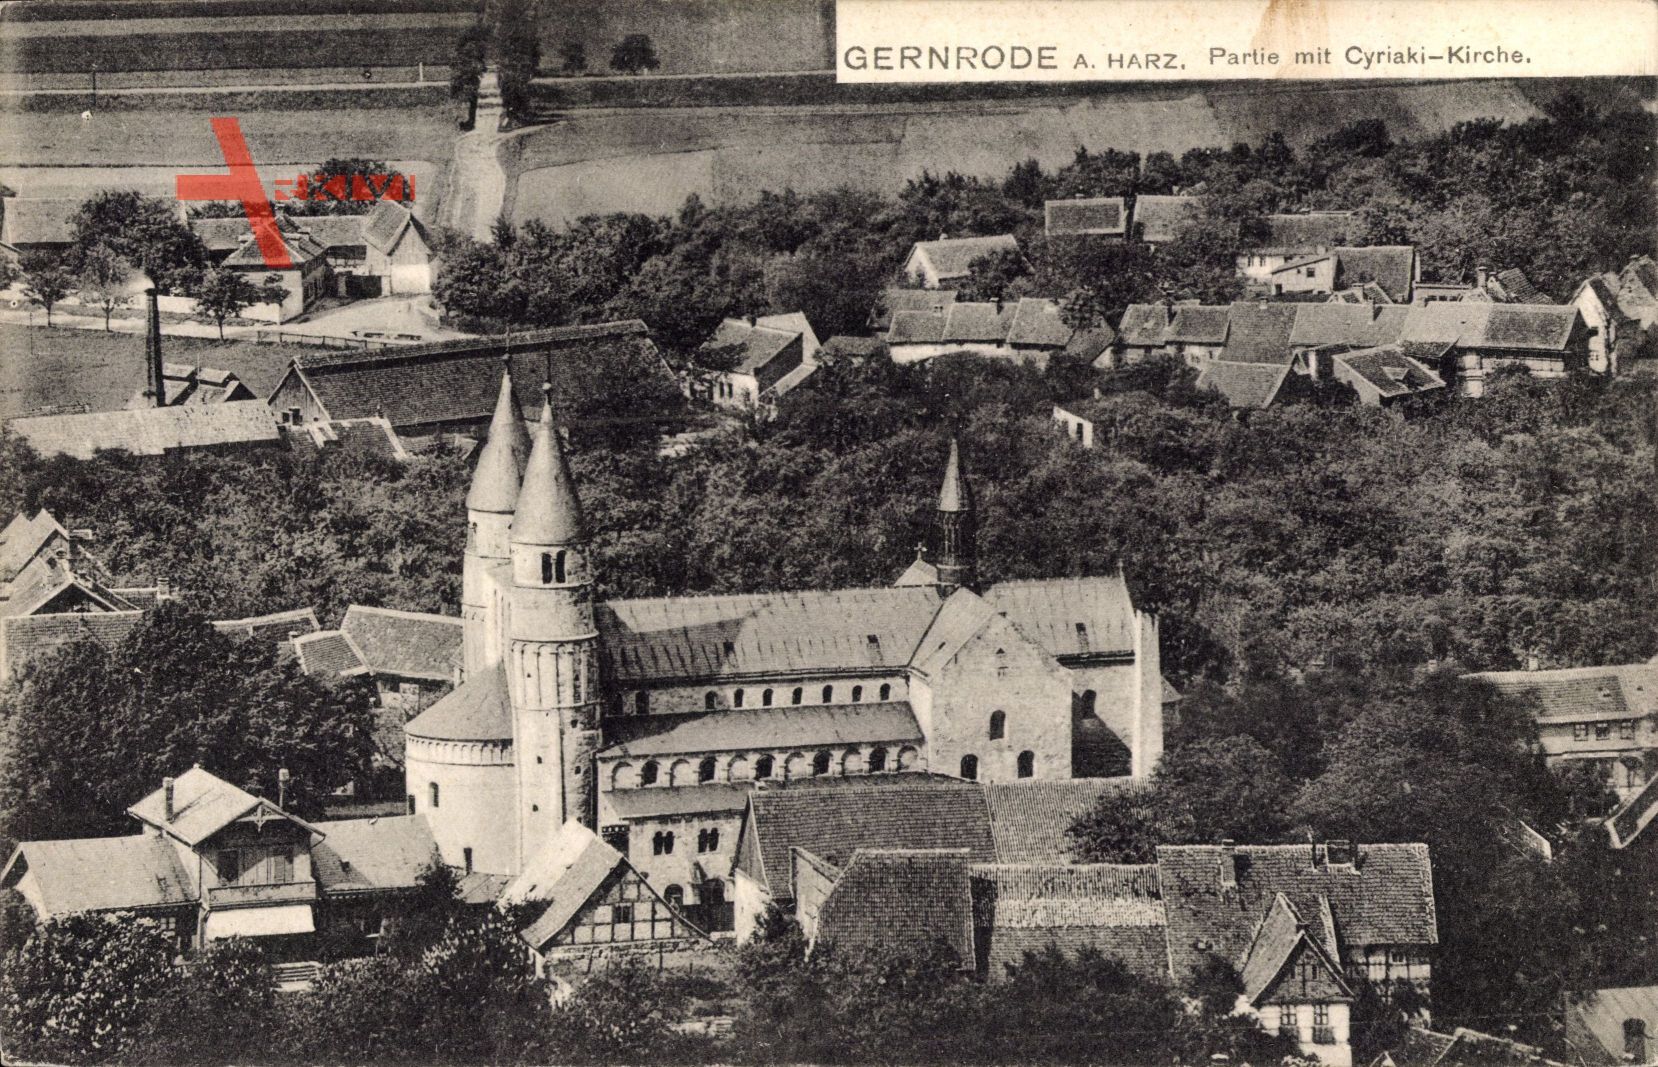 Gernrode im Harz, Teilansicht vom Ort mit Cyriaki Kirche, Dächer, Felder